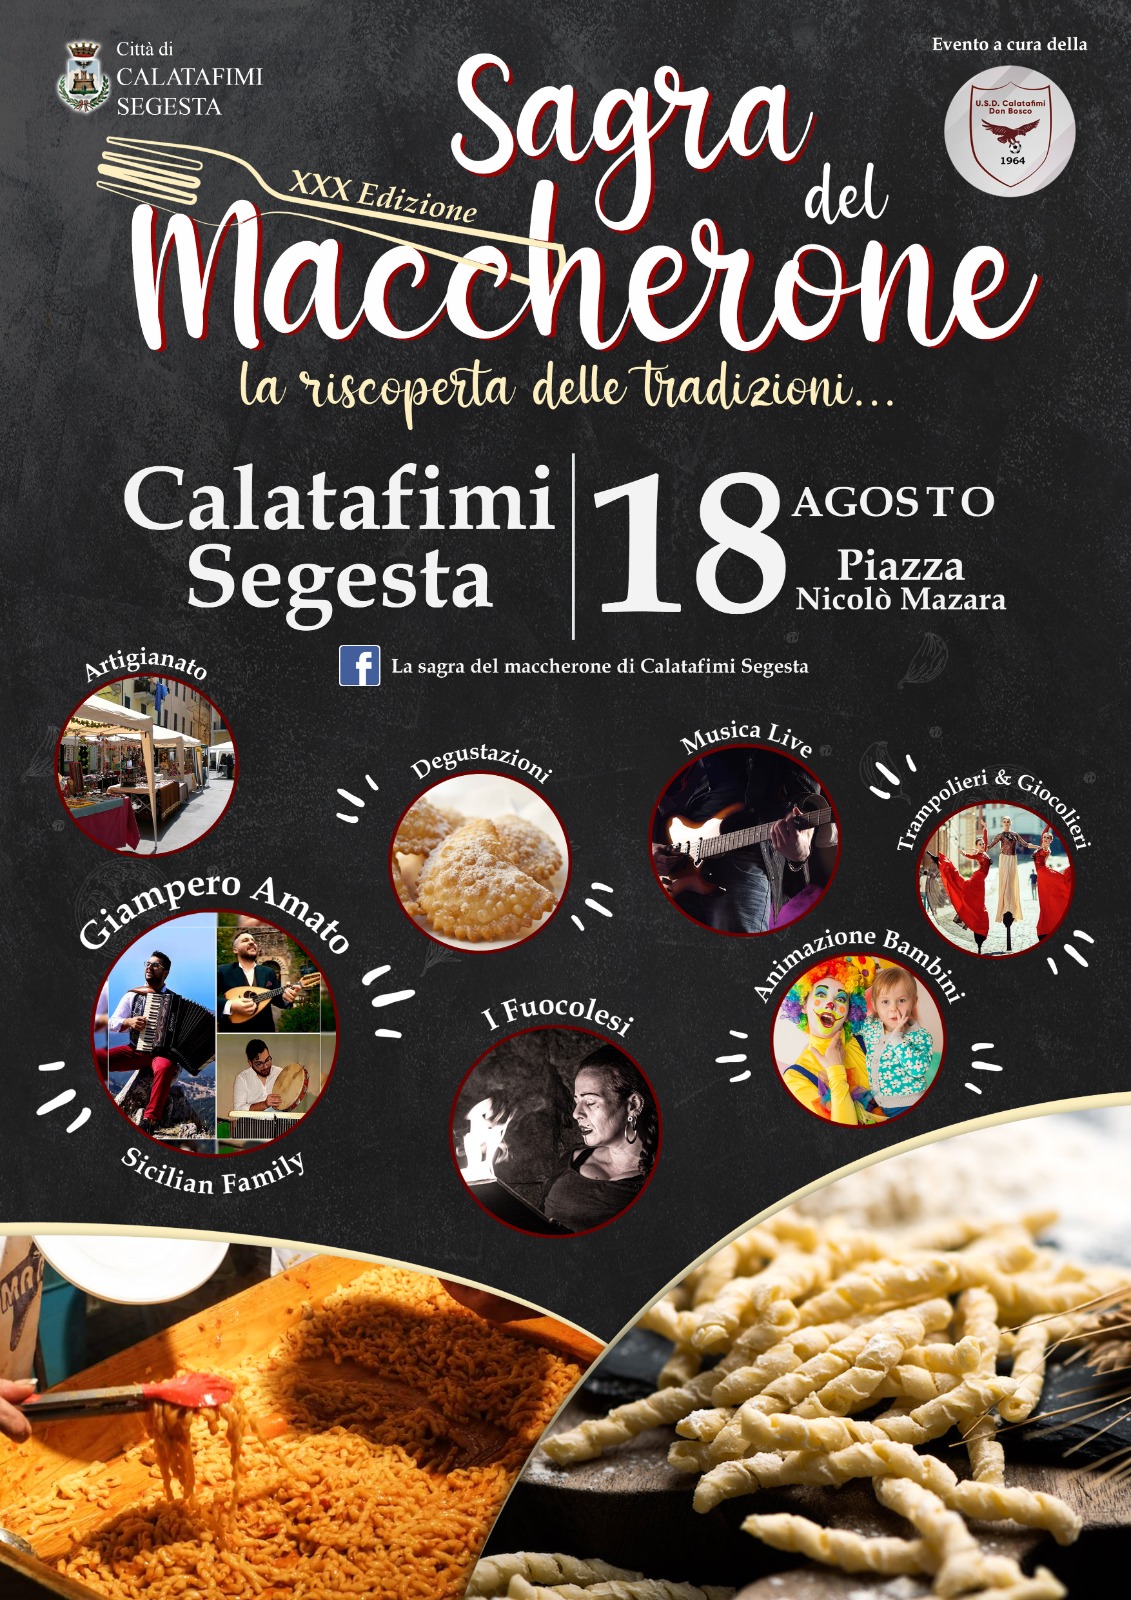 Calatafimi Segesta: torna il 18 agosto l'evento gastronomico "Sagra del maccherone"